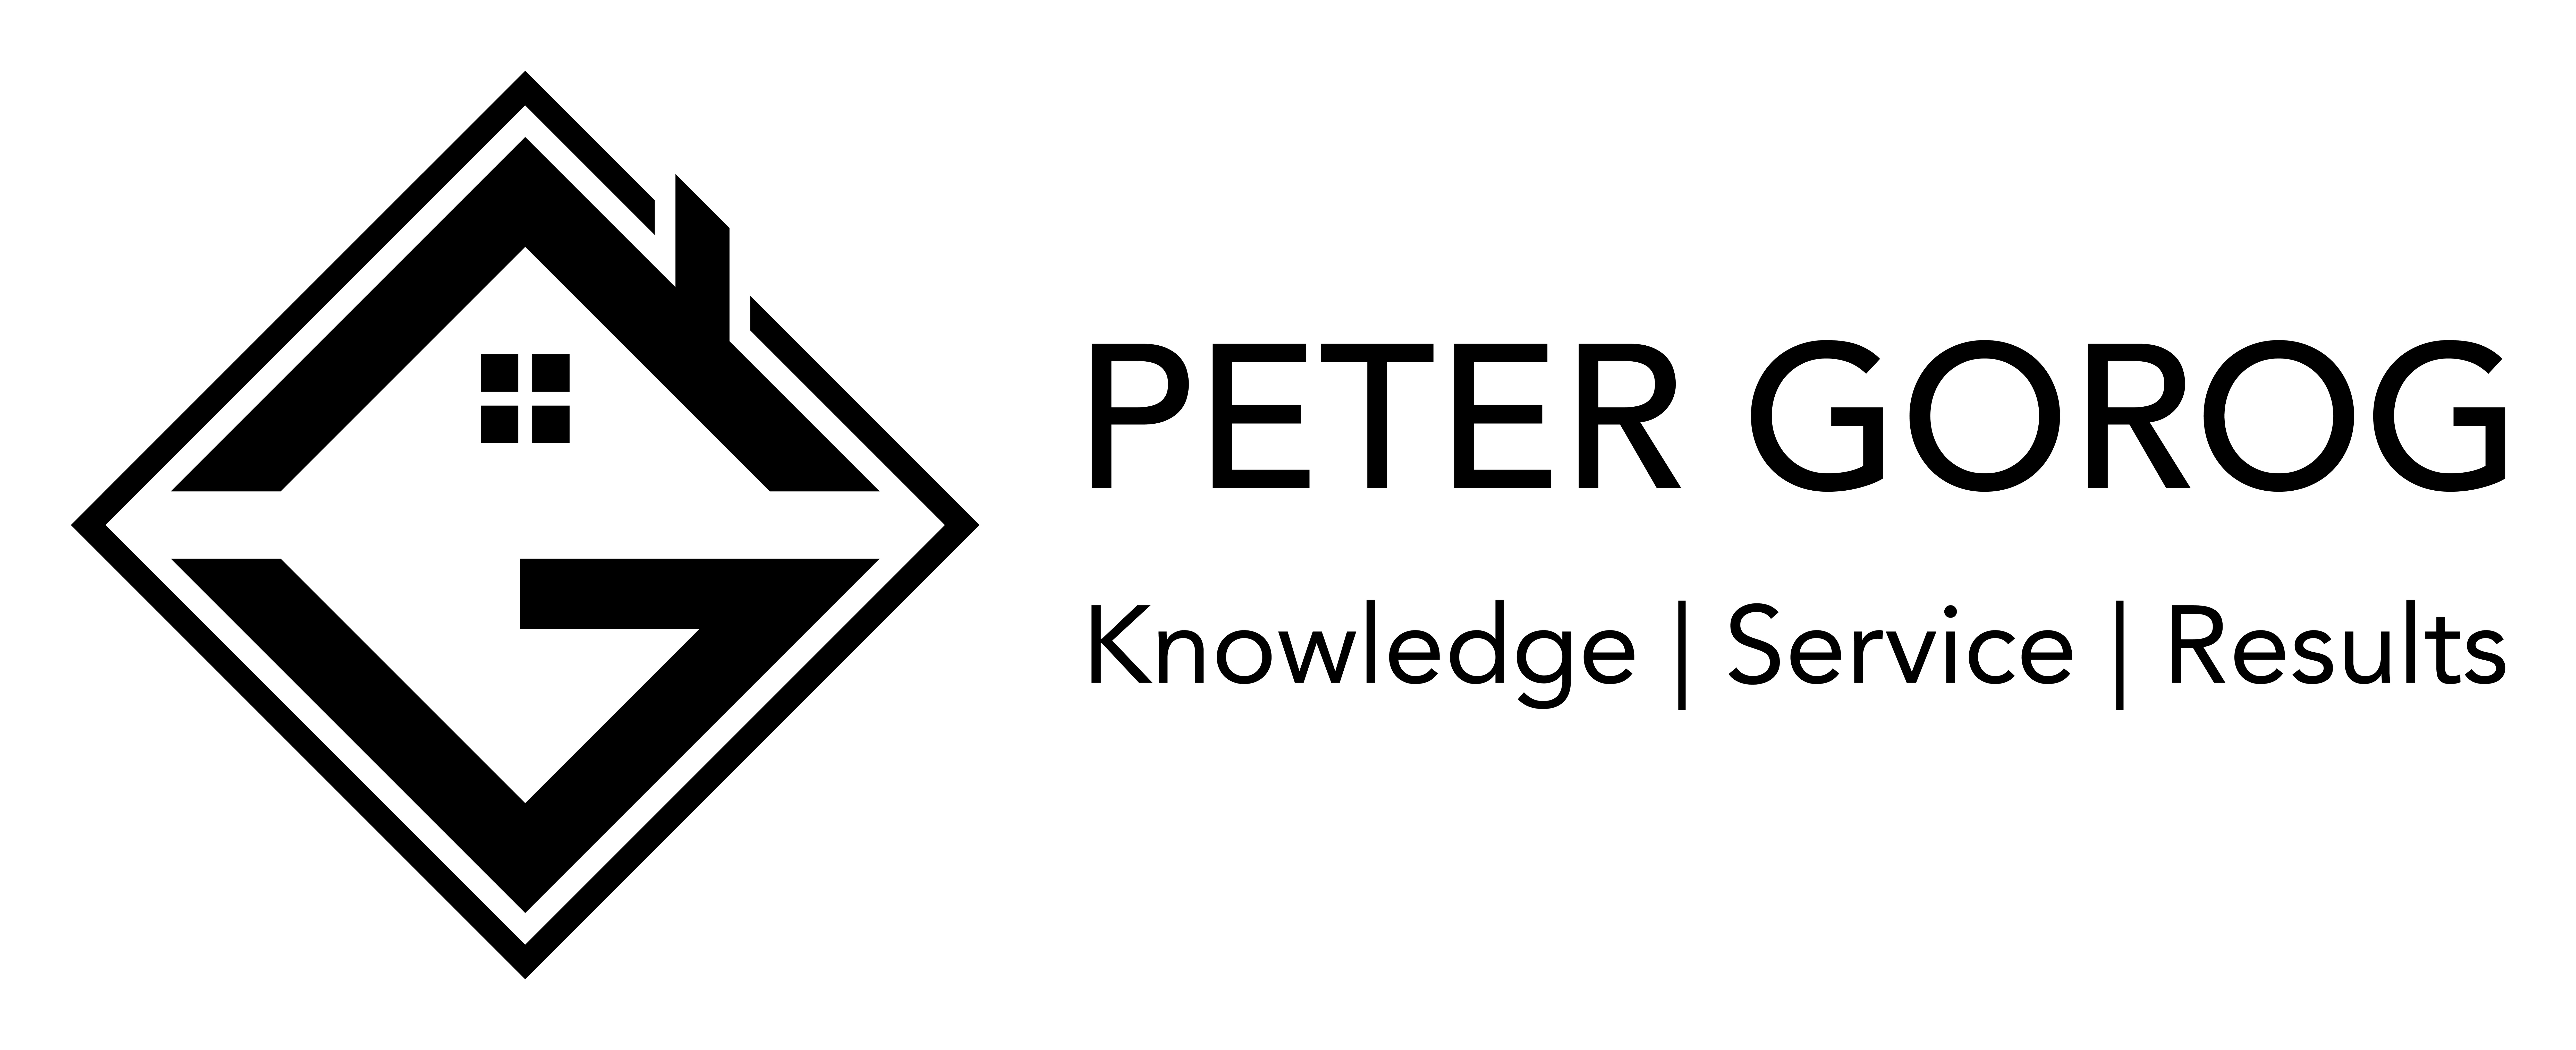 A text banner describing Peter Gorogs results.